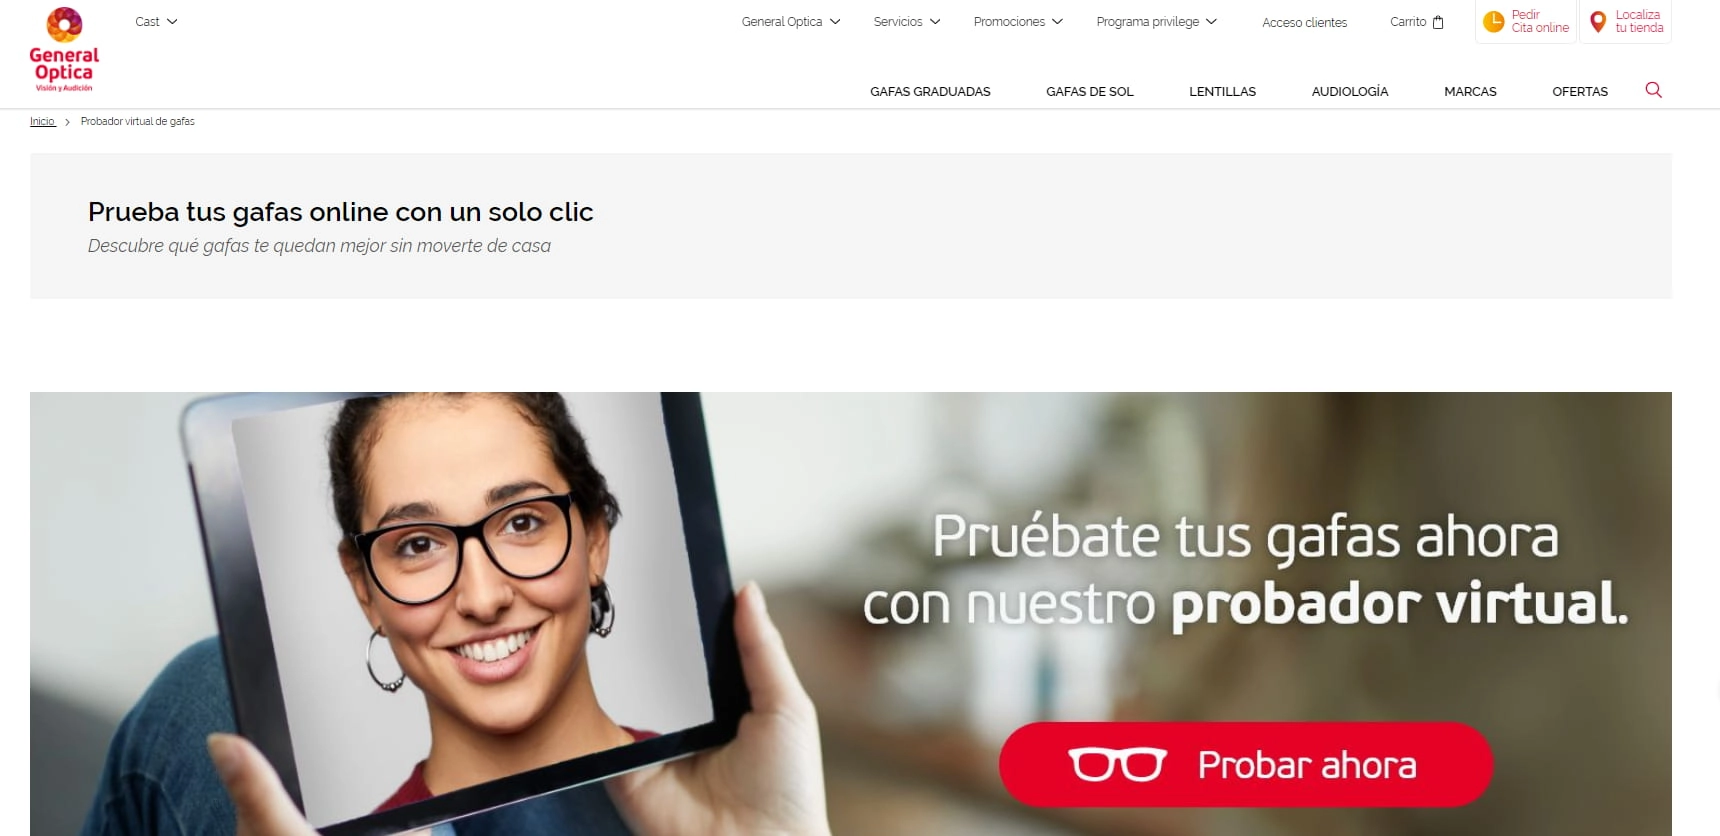 General Optica - Prueba tus gafas online con un solo clic